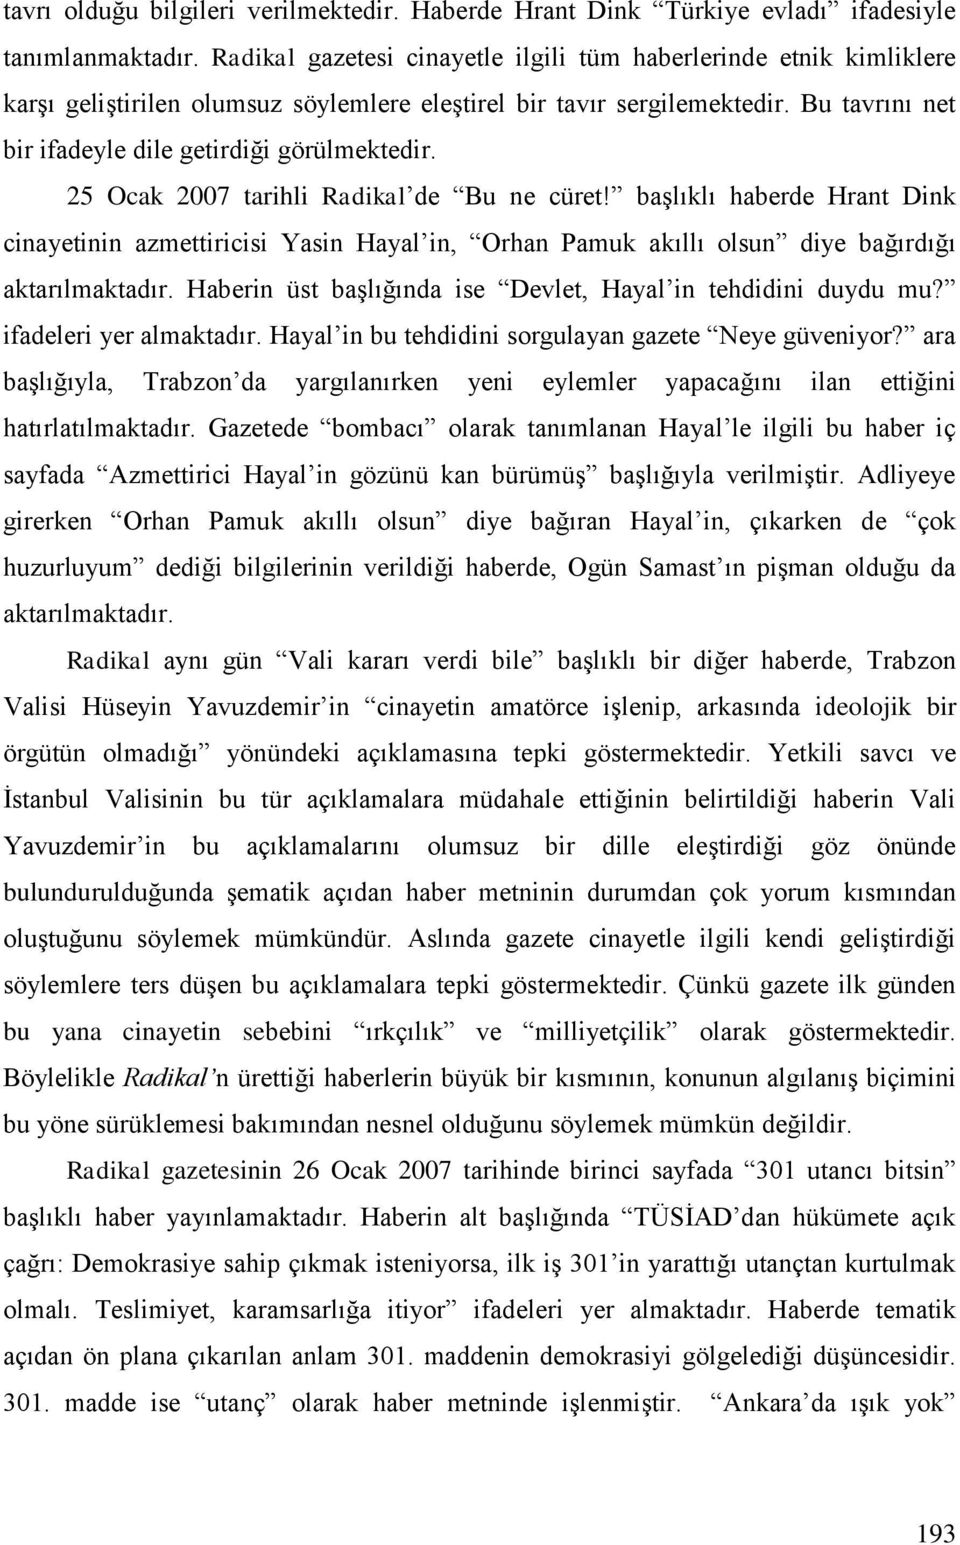 25 Ocak 2007 tarihli Radikal de Bu ne cüret! başlıklı haberde Hrant Dink cinayetinin azmettiricisi Yasin Hayal in, Orhan Pamuk akıllı olsun diye bağırdığı aktarılmaktadır.